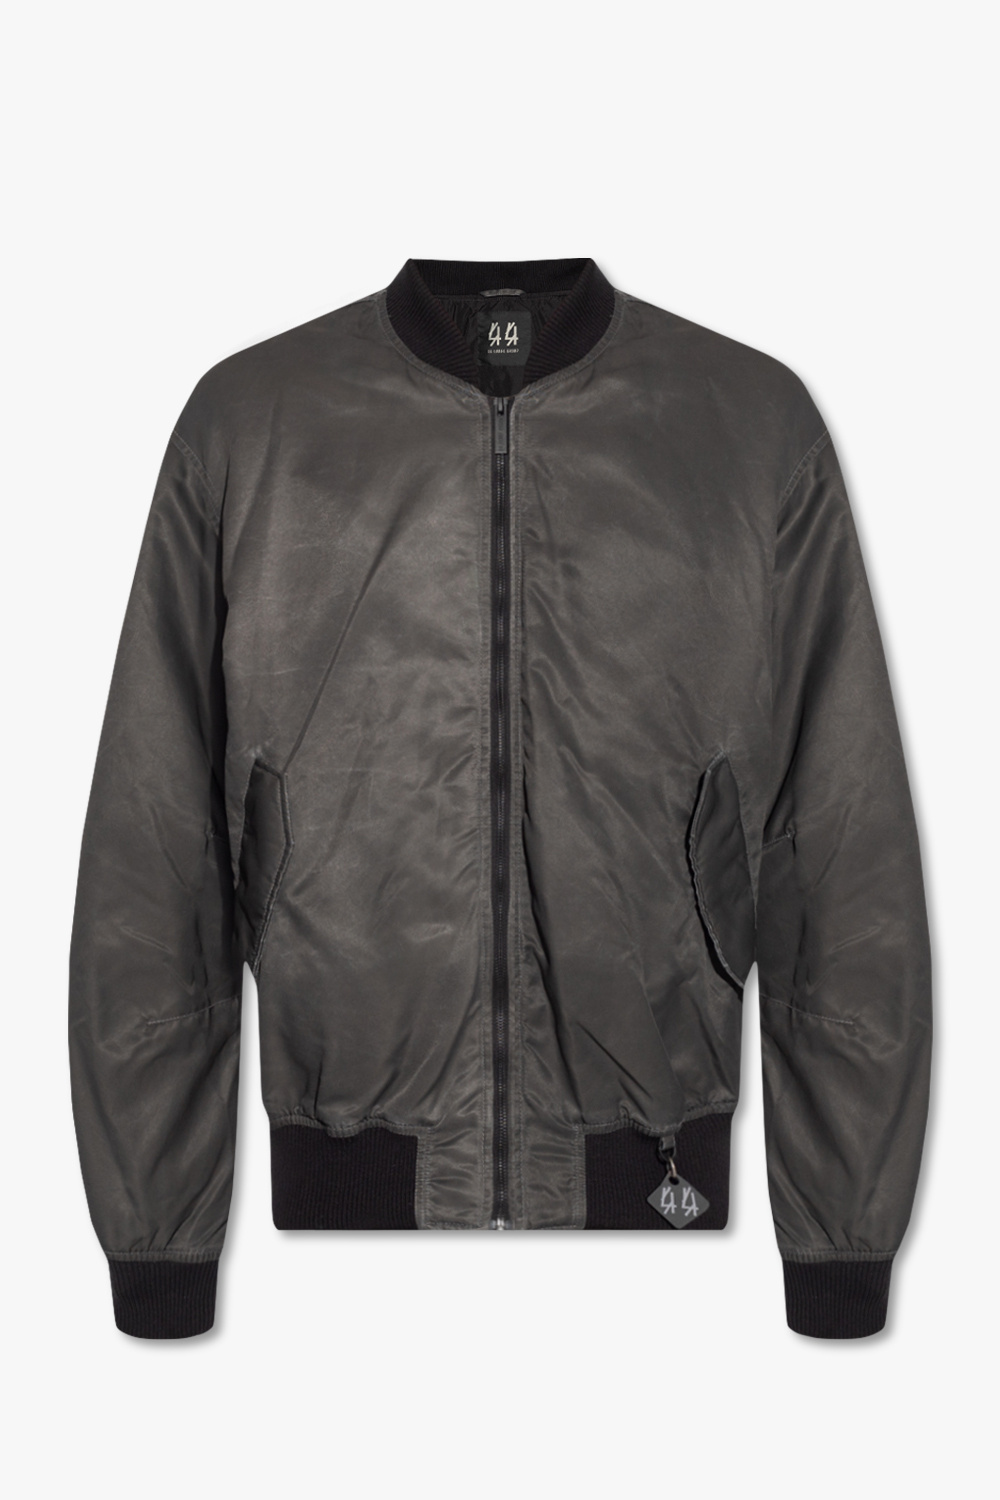 VbjdevelopmentsShops KR - Grey Bomber jacket with logo 44 Label 